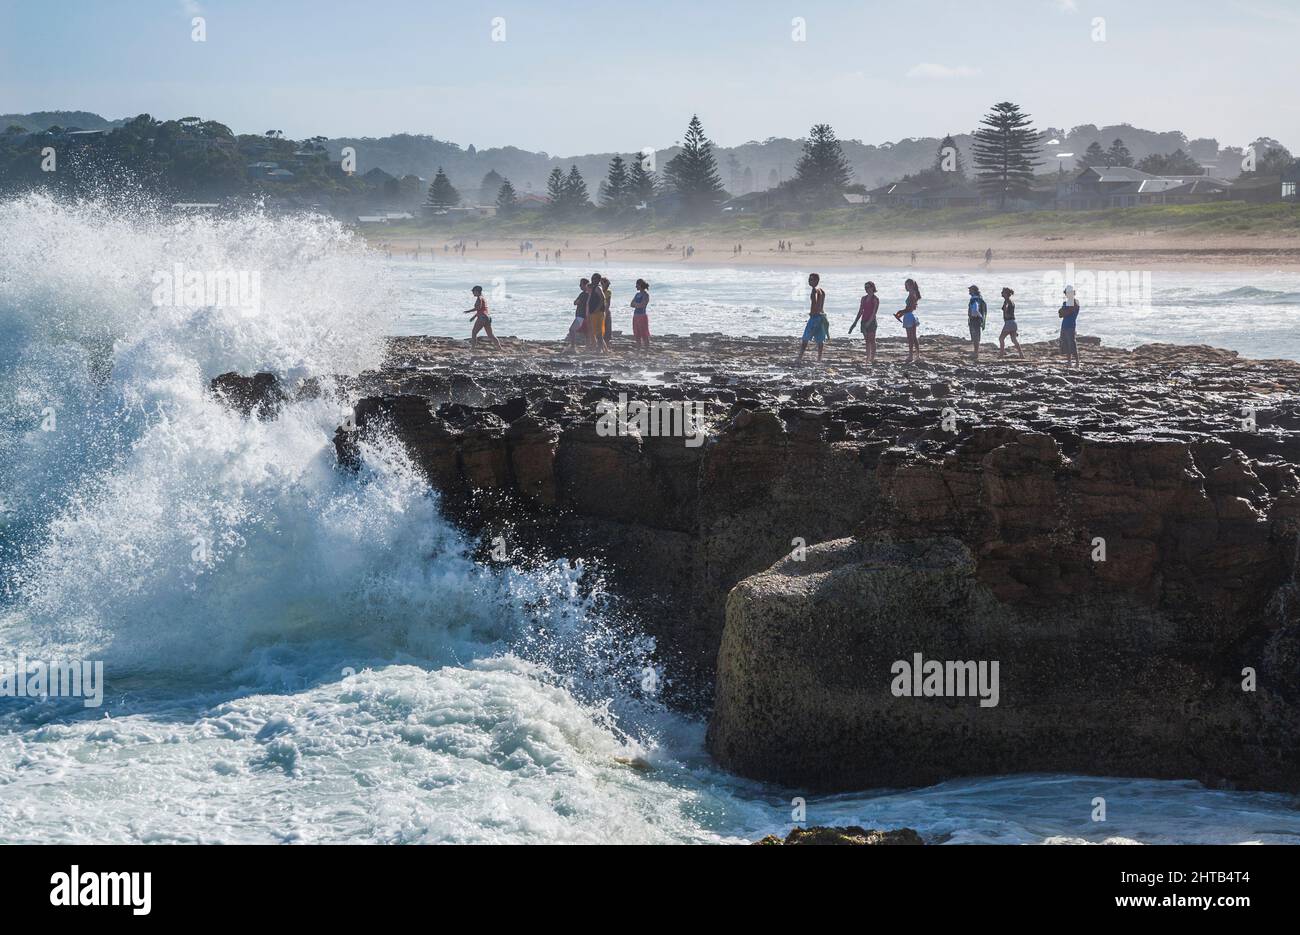 Tumultuos surfez sur le promontoire rocheux de North Avoca Beach, sur la côte centrale de la Nouvelle-Galles du Sud, en Australie Banque D'Images